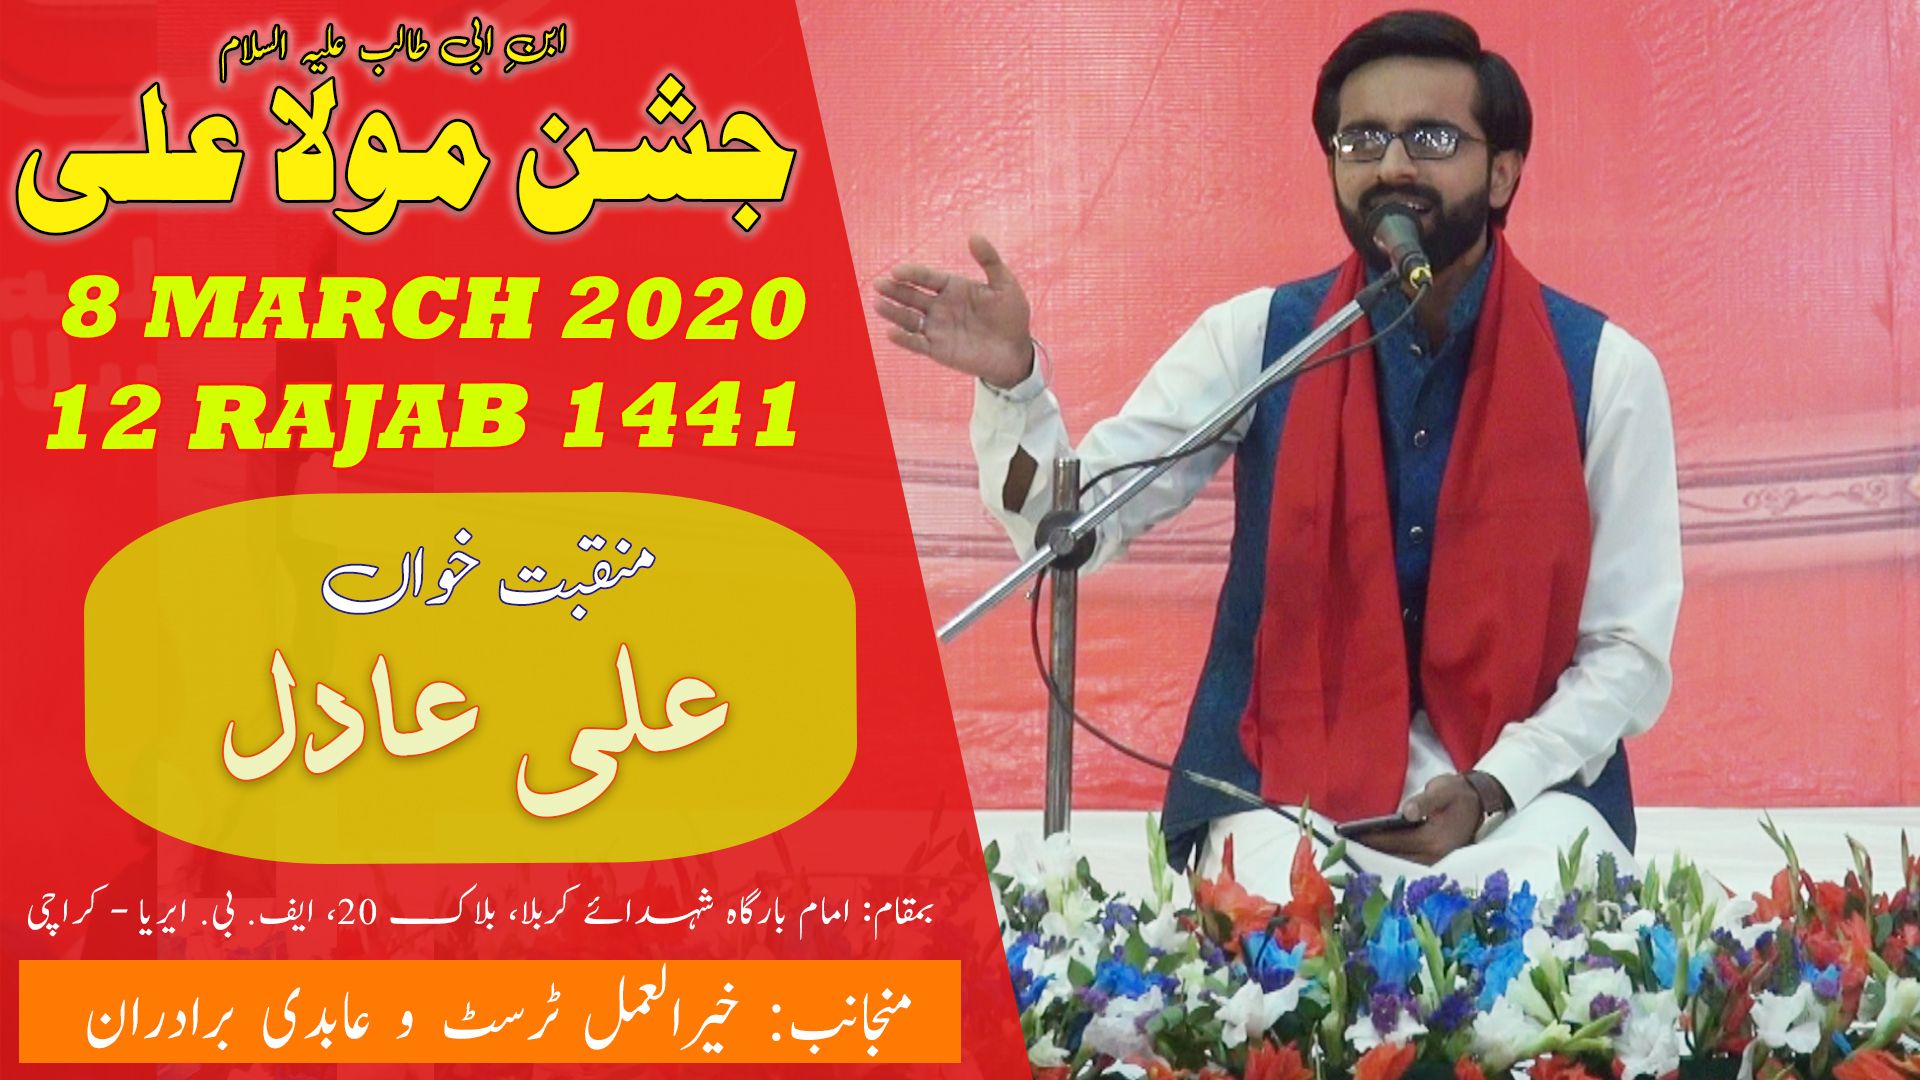 Manqabat | Ali Adil | Jashan-e-Mola Ali - 12 Rajab 2020 - Imam Bargah Shuhdah-e-Karbala